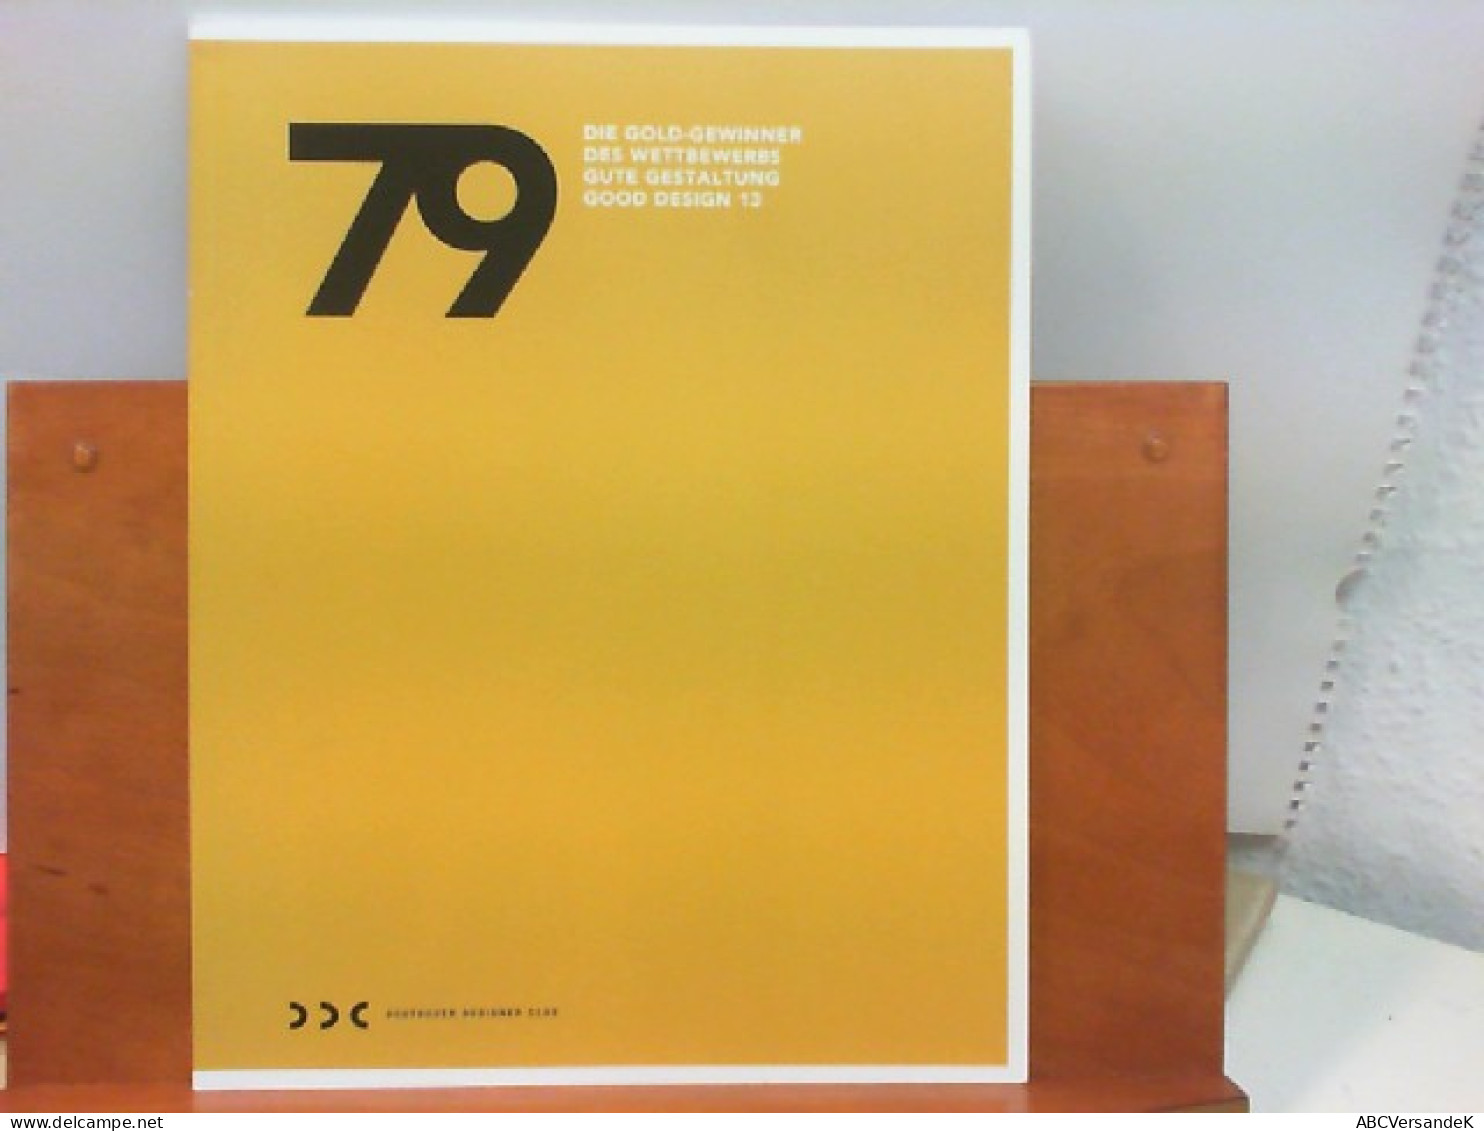 79 - Die Gold - Gewinner Des Wettbewerbs Gute Gestaltung Good Design 13 - Graphisme & Design